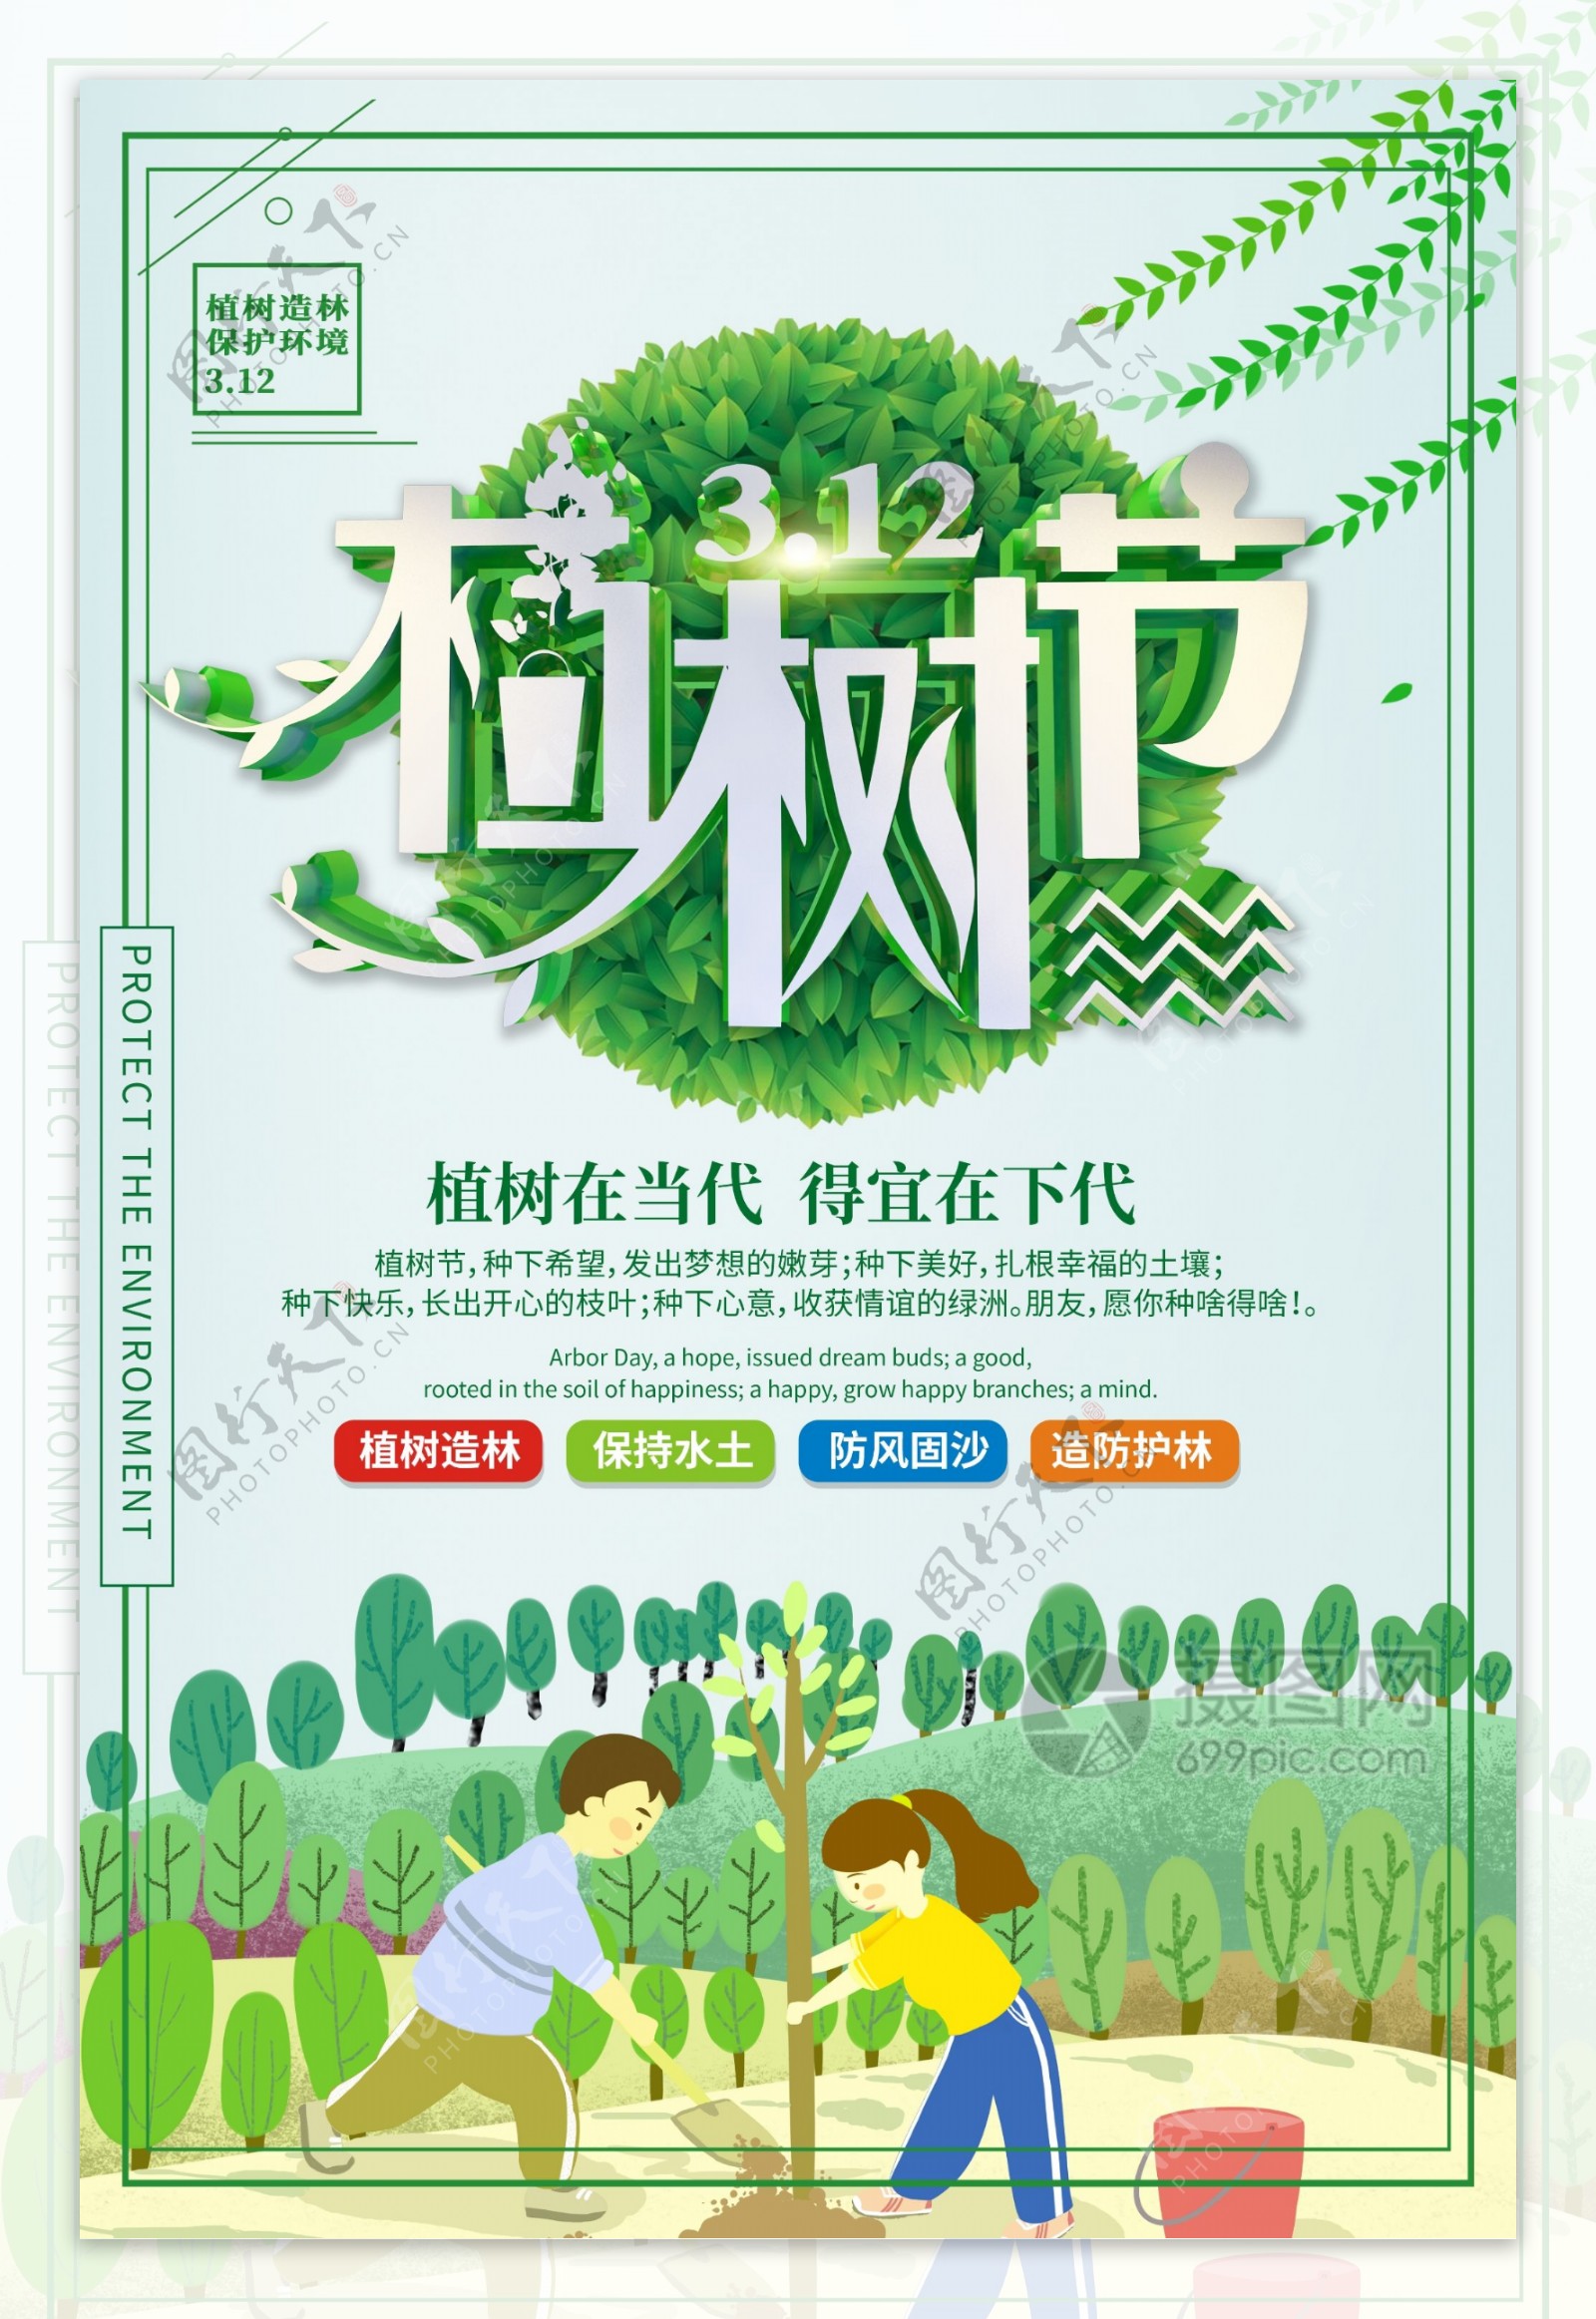 312创意植树节绿色公益宣传海报设计